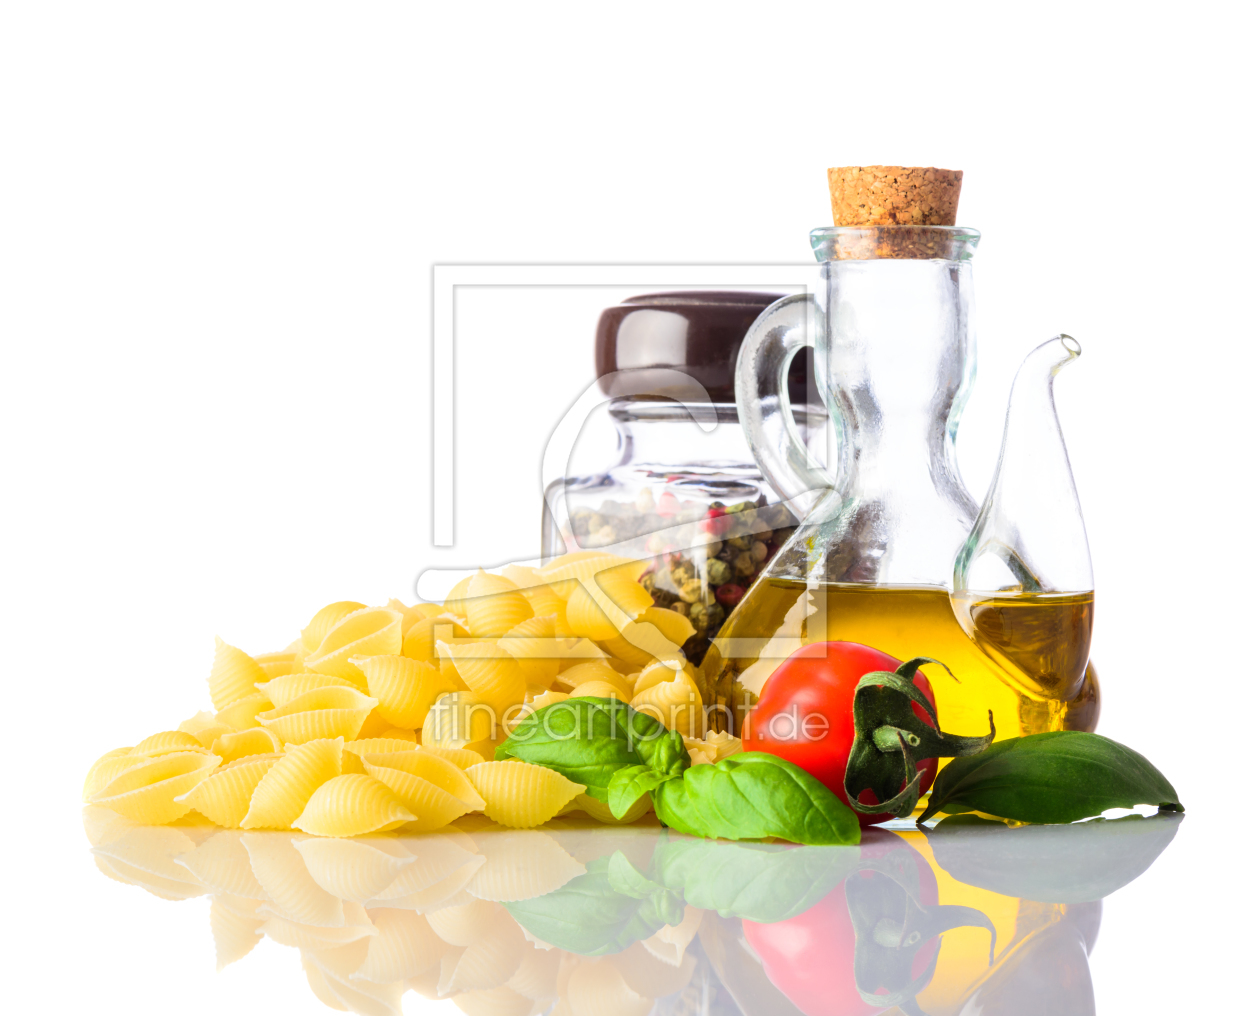 Bild-Nr.: 11830343 Italienische Conchiglie Rigate Pasta auf Weiß erstellt von xfotostudio